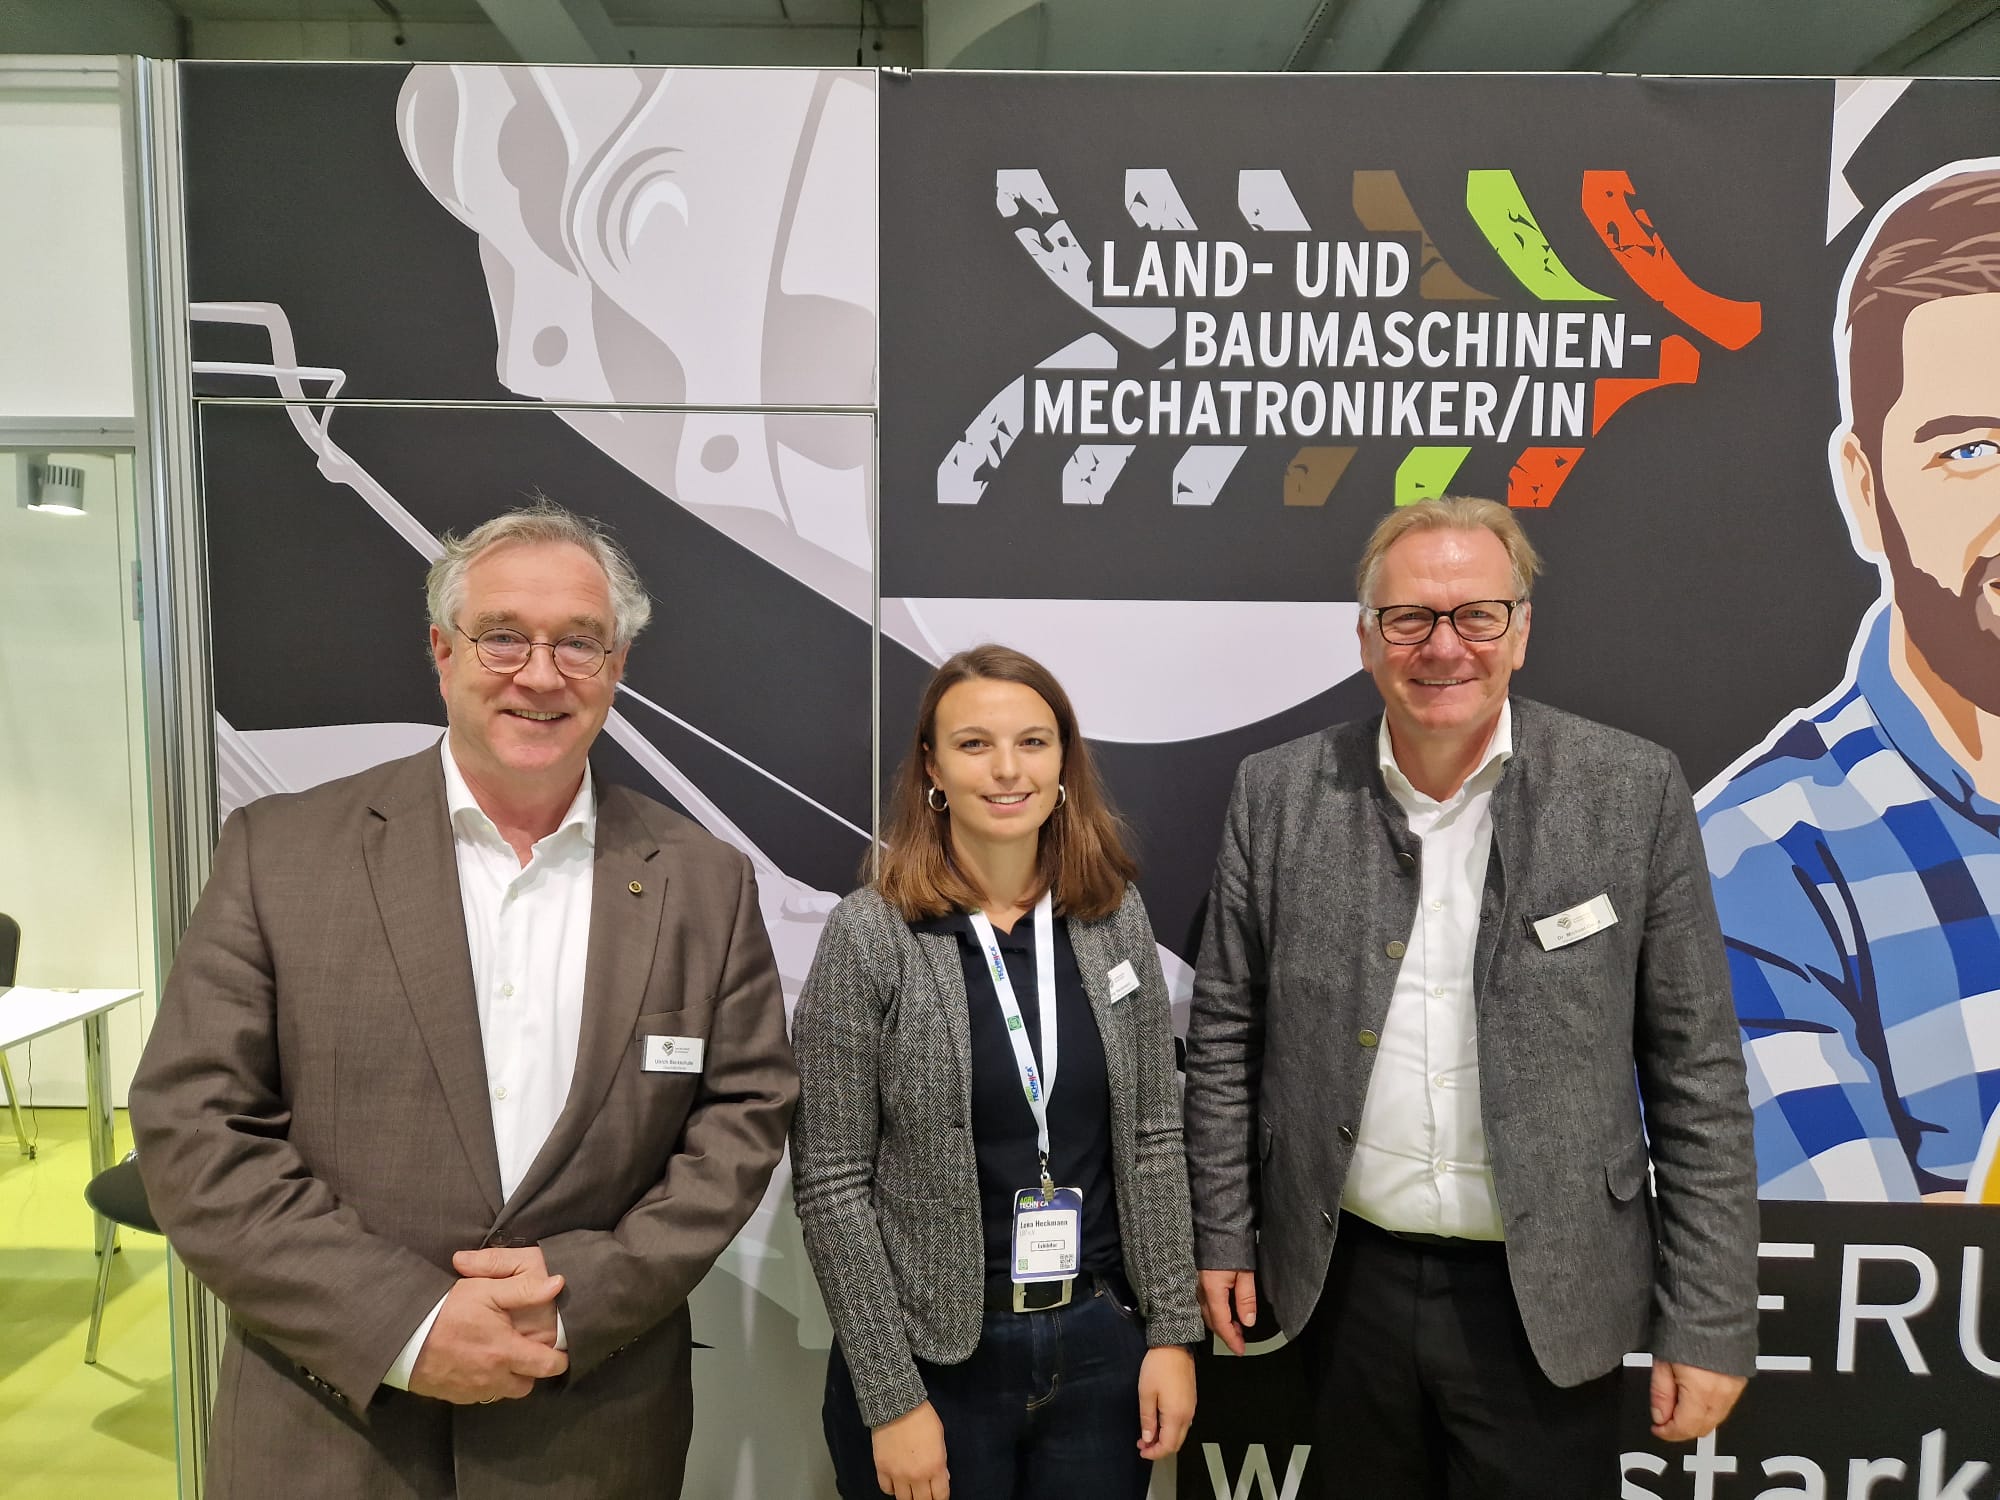 v.l.n.r.: Ulrich Beckshulte (CEO), Lena Heckmann (Presse- & Öffentlichkeitsarbeit) und Dr. Michael Oelck (Hauptgeschäftsführer).